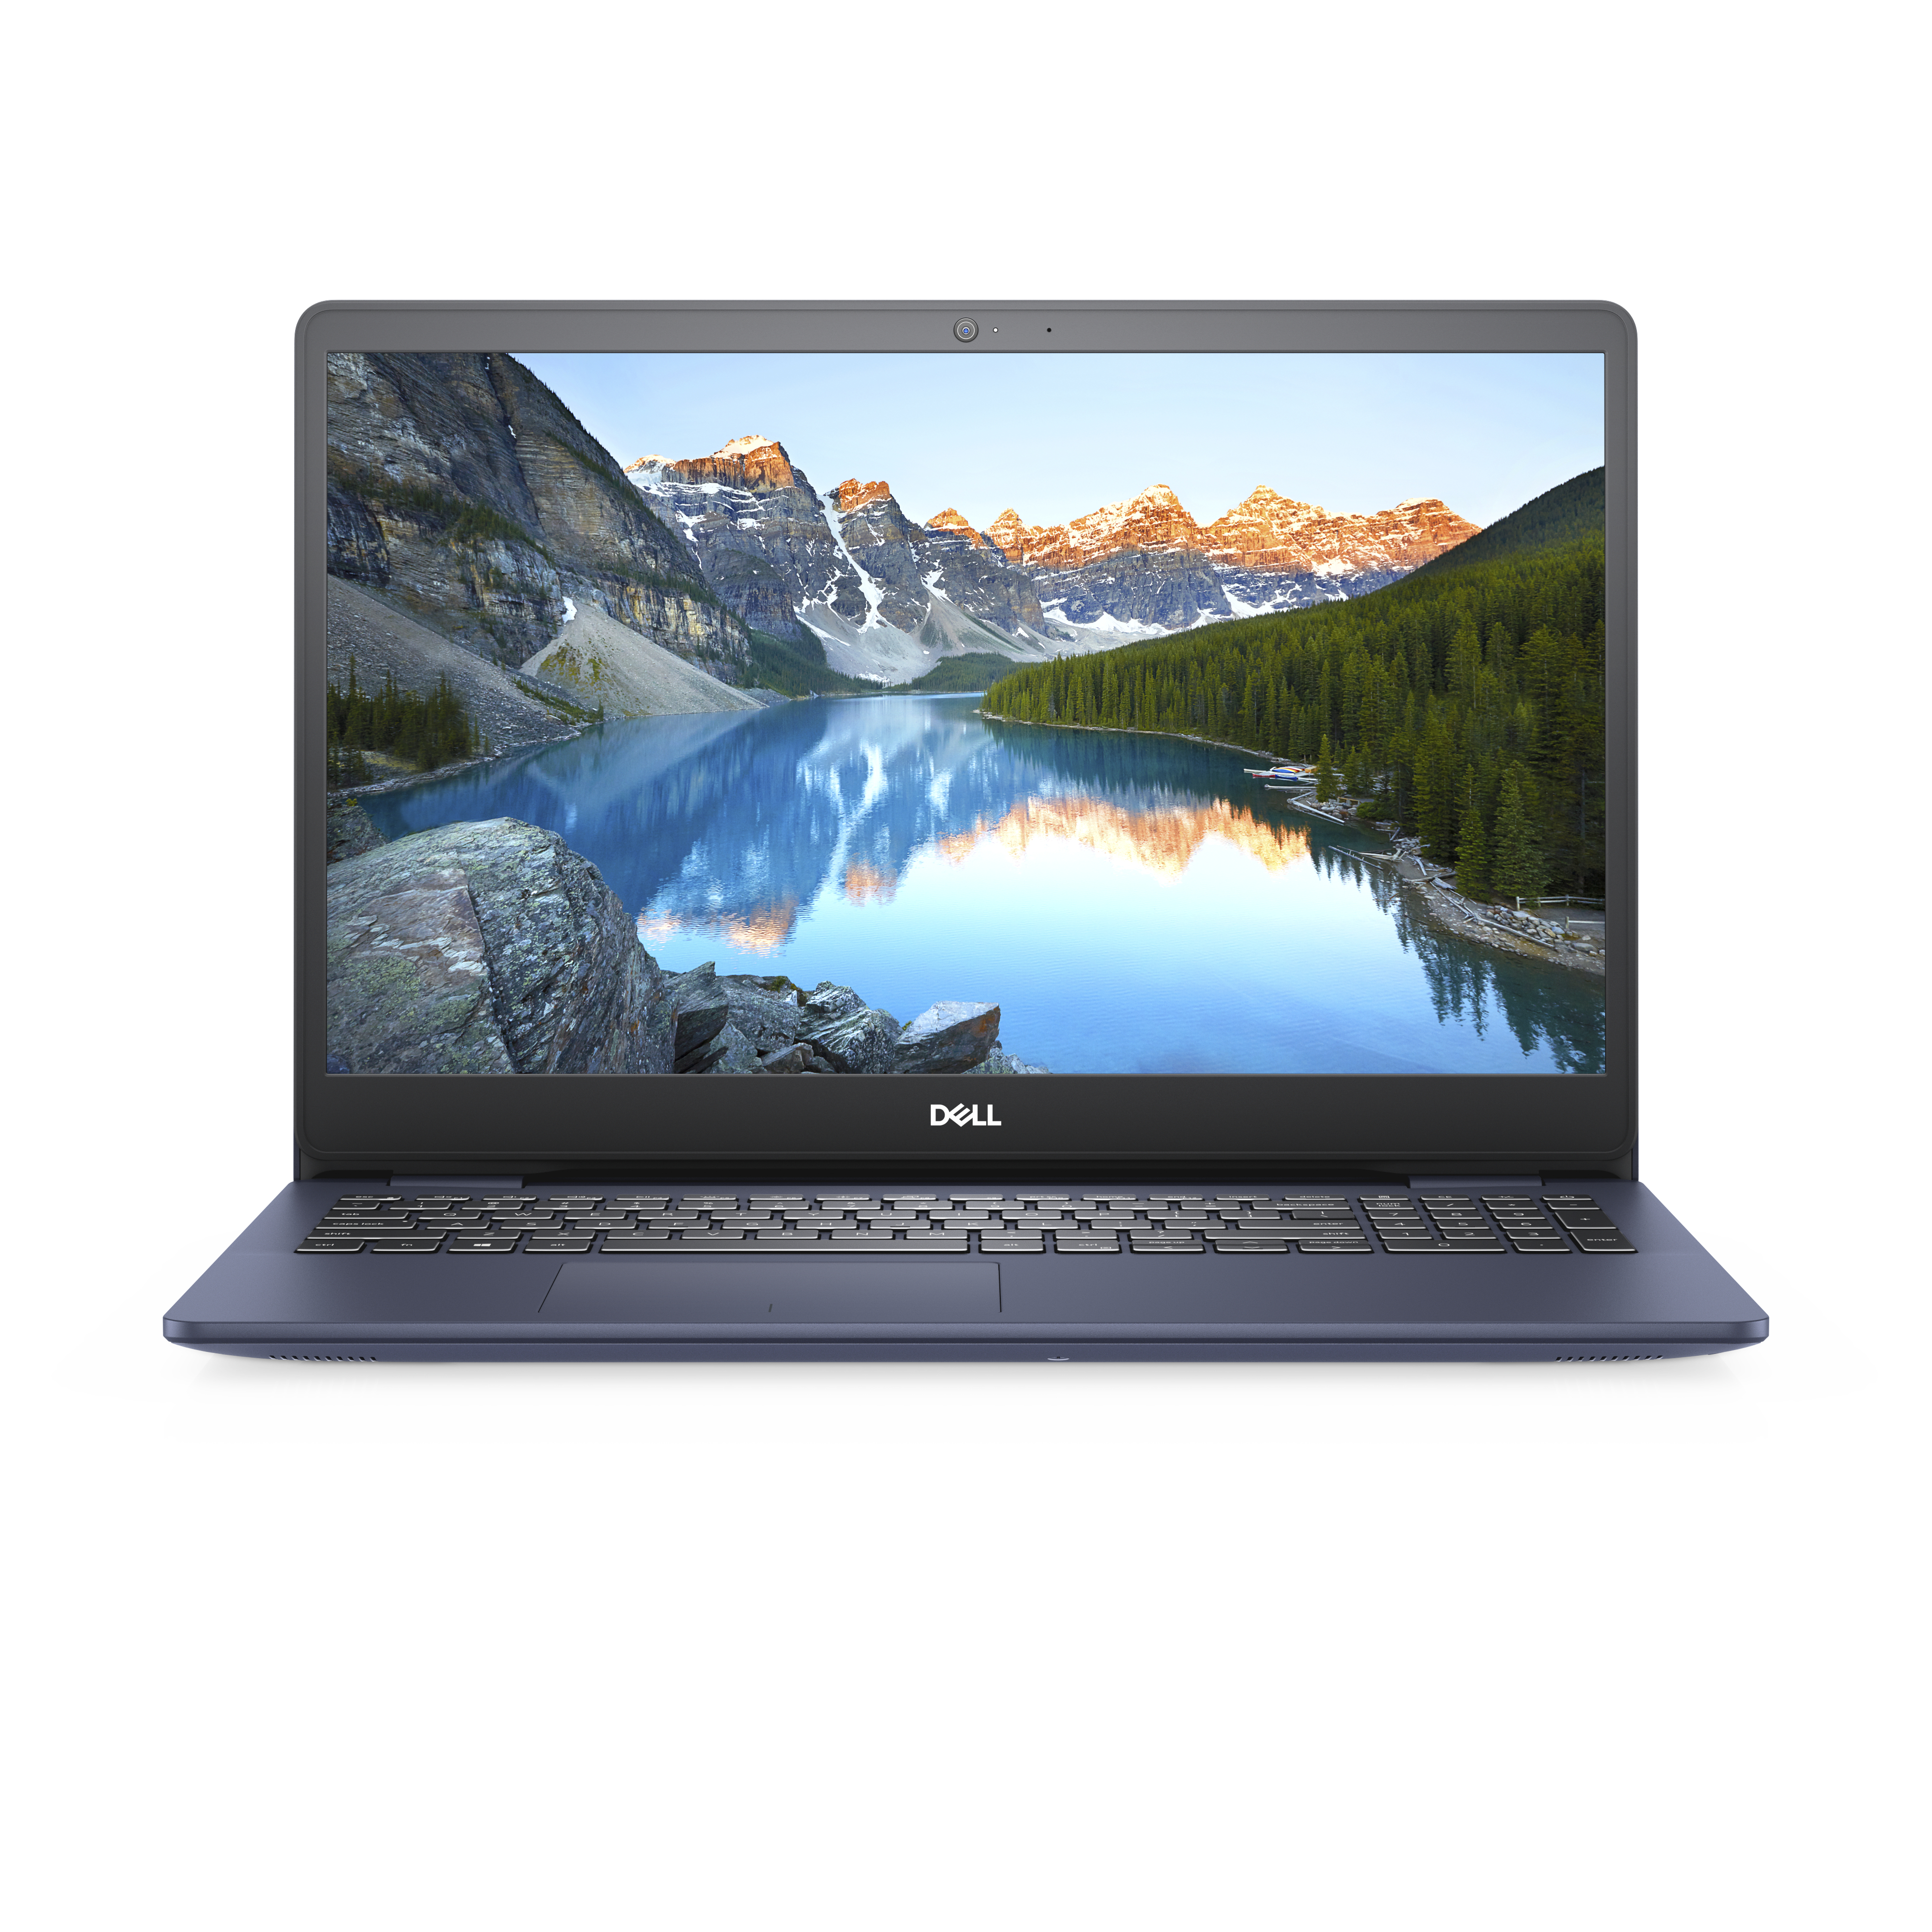 Laptop Dell Inspiron 15 5593 Core I5 1035G1 8Gb 256Gb 15.6" W10 Rkc98